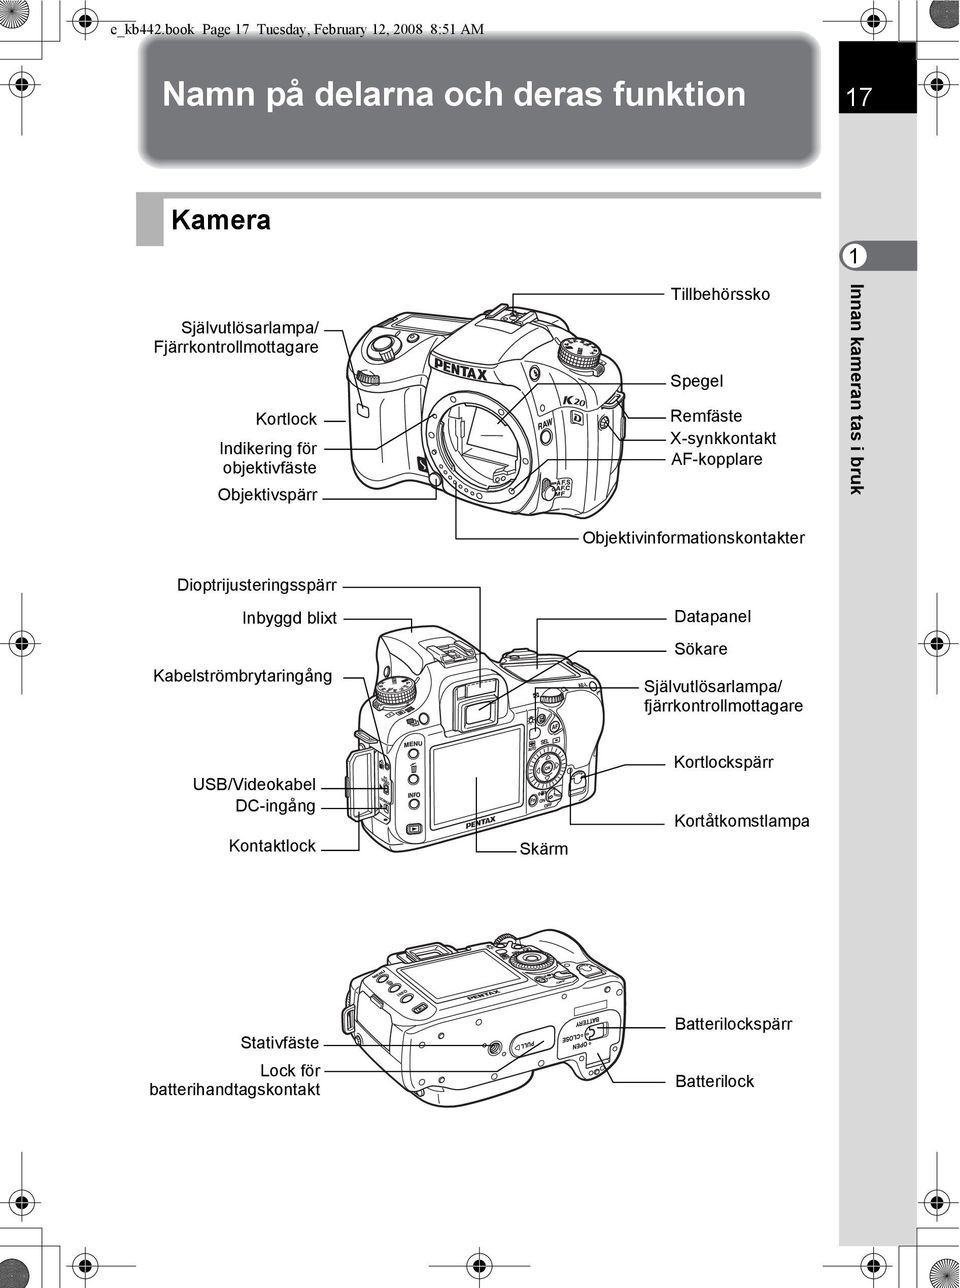 Kortlock Indikering för objektivfäste Objektivspärr Tillbehörssko Spegel Remfäste X-synkkontakt AF-kopplare Innan kameran tas i bruk